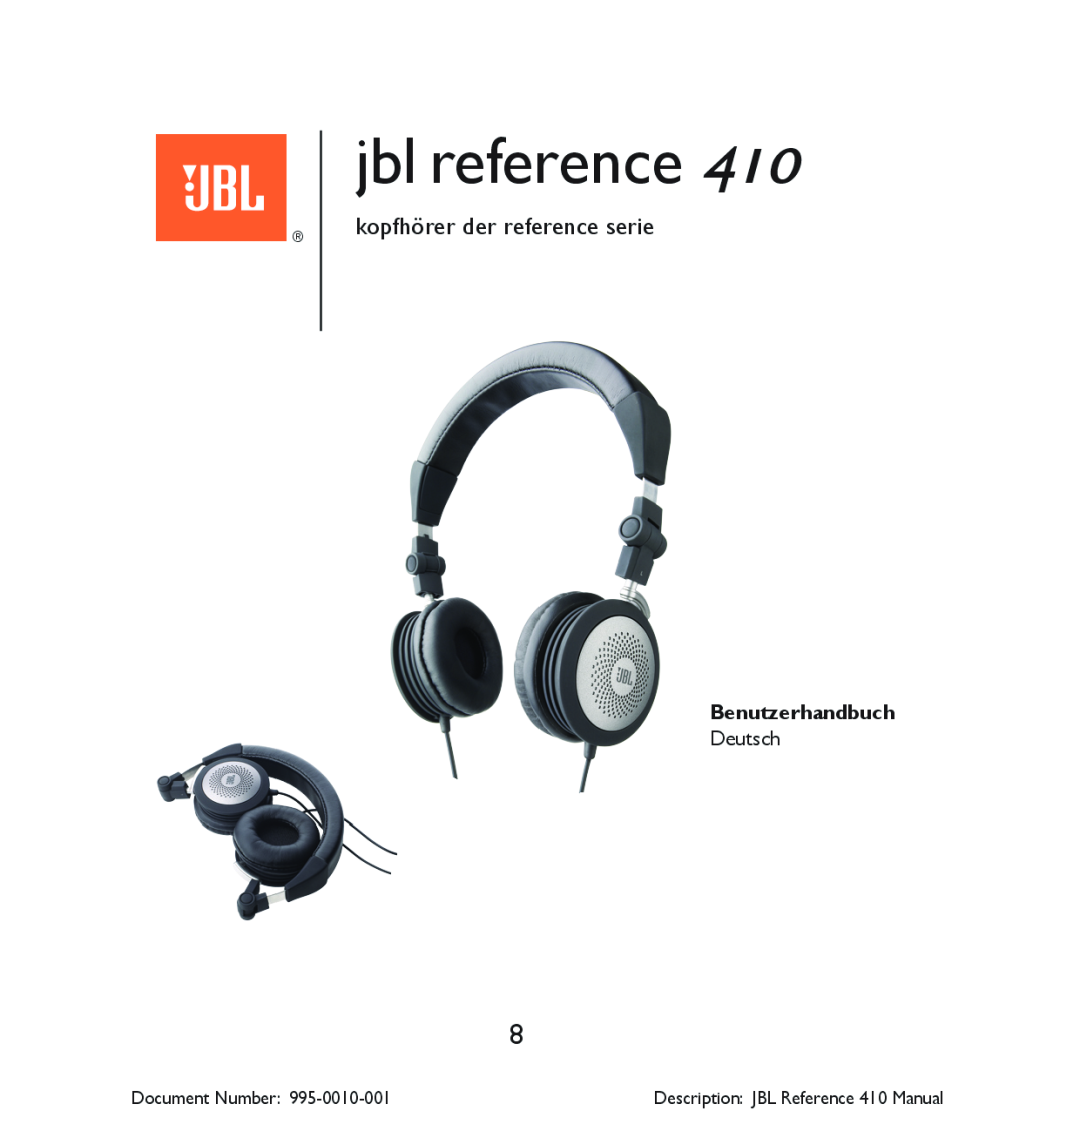 JBL 410 manual kopfhörer der reference serie, Benutzerhandbuch, jbl reference, Document Number 